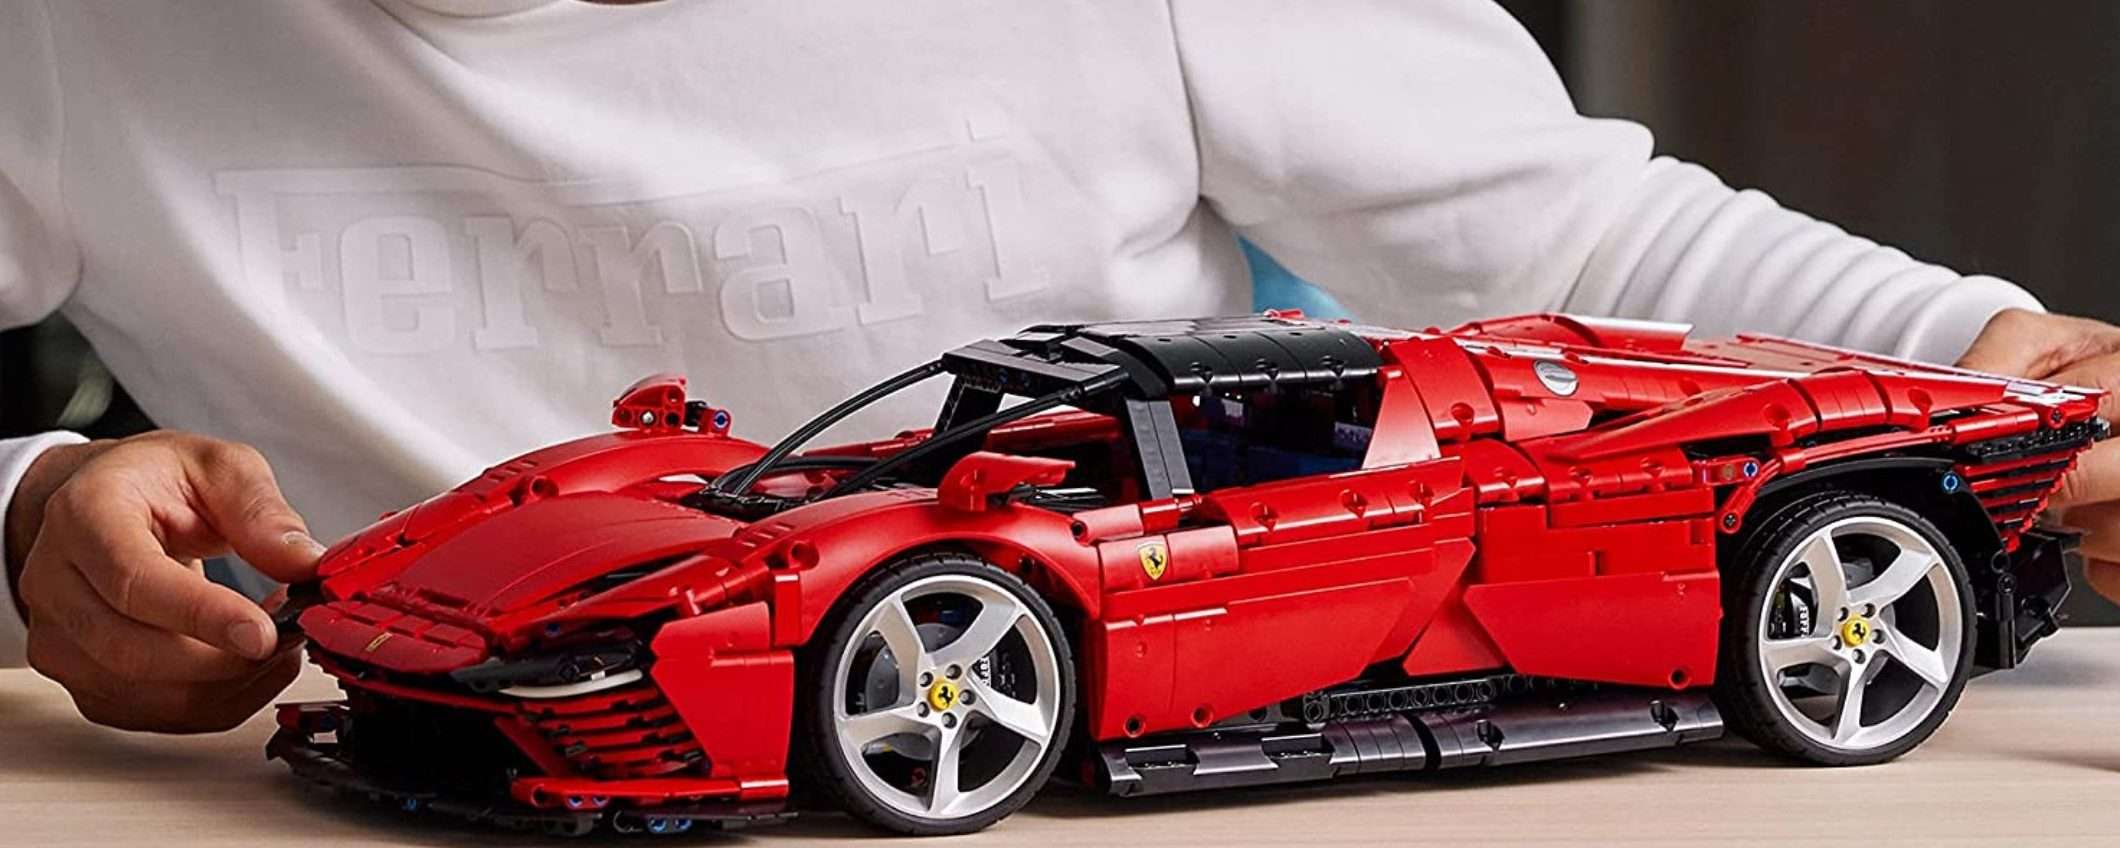 LEGO Ferrari Daytona, una meraviglia e uno sconto super: -150 euro